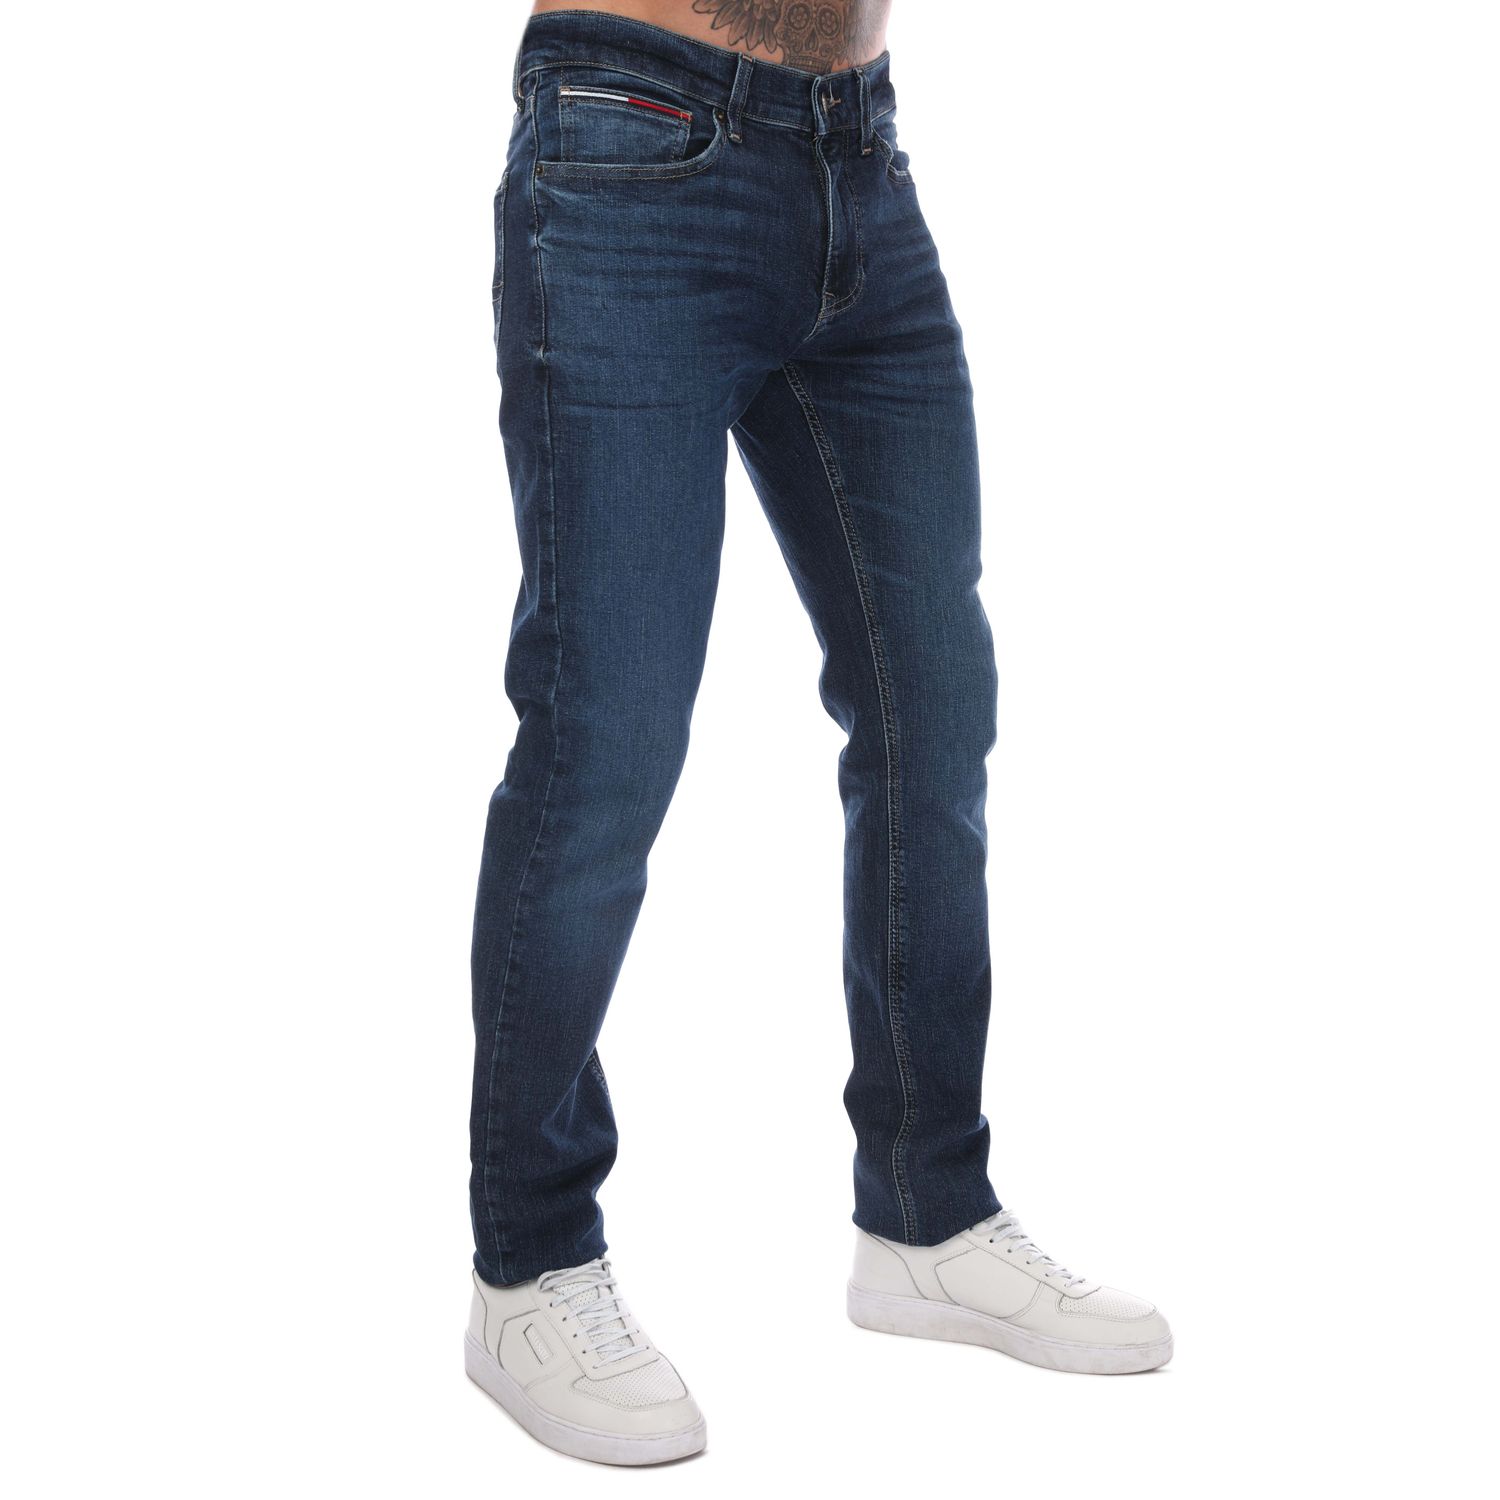 Dark Blue Slim Mens Jeans Label - Tommy Hilfiger Fit The Scanton Get